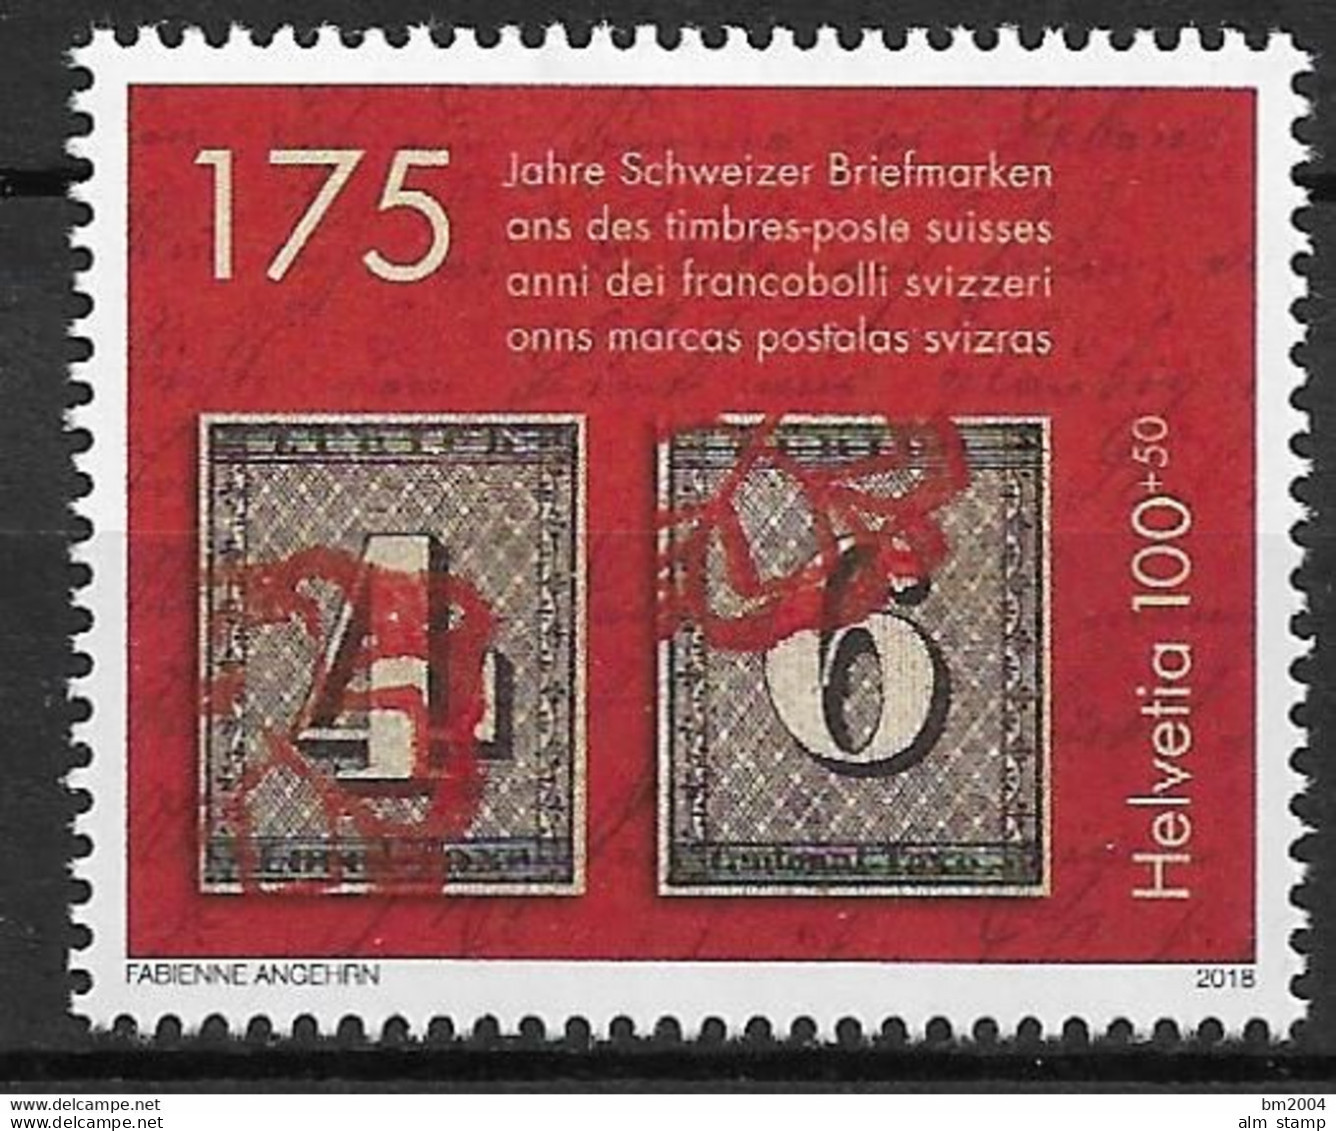 2018 Schweiz Mi. 2531 **MNH   175 Jahre Schweizer Briefmarken - Ungebraucht